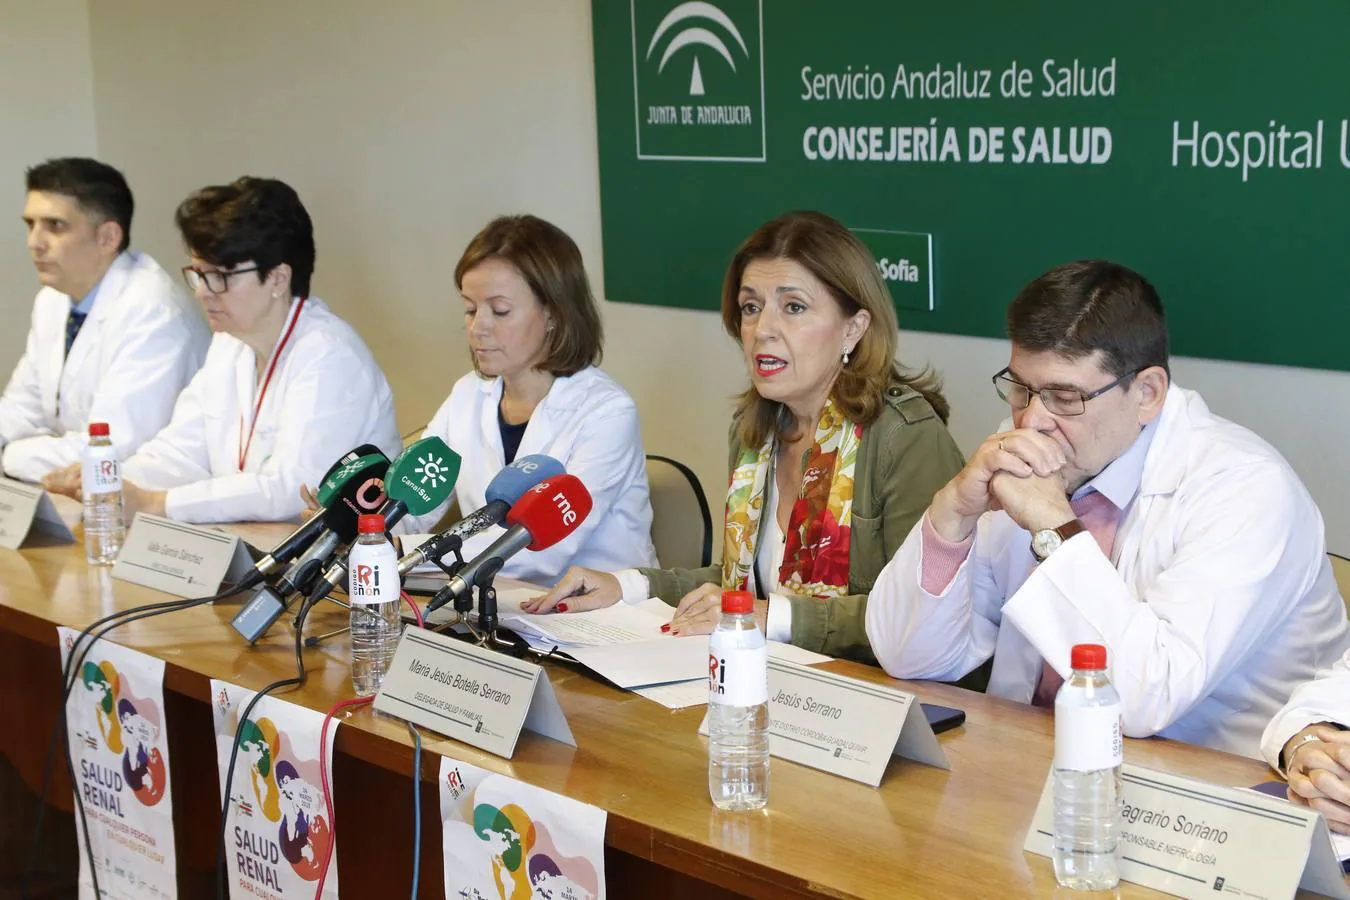 Presentación del Día Mundial del Riñón en Córdoba, en imágenes